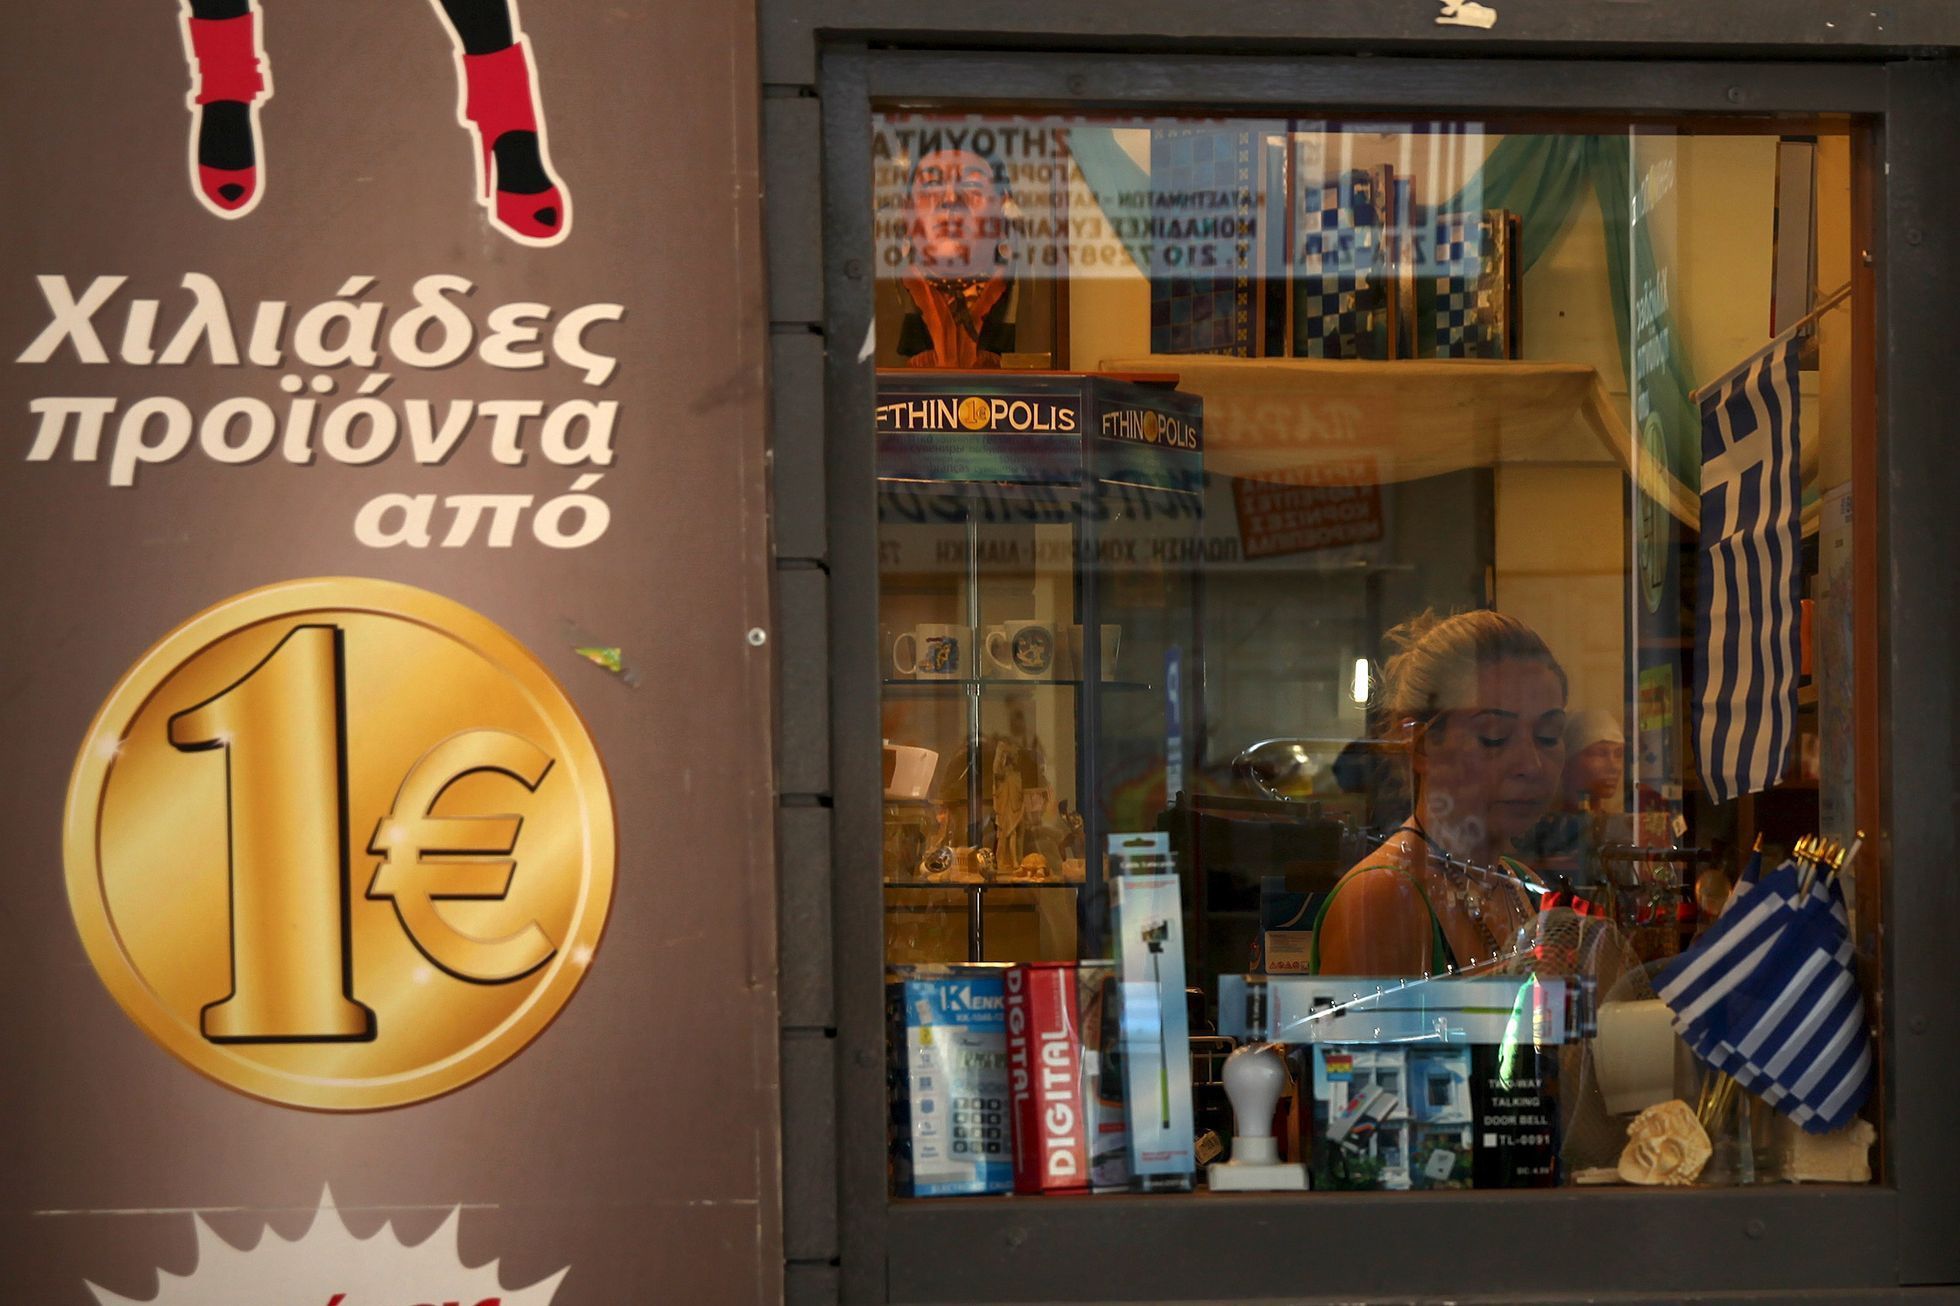 "One Euro shop" v Aténách